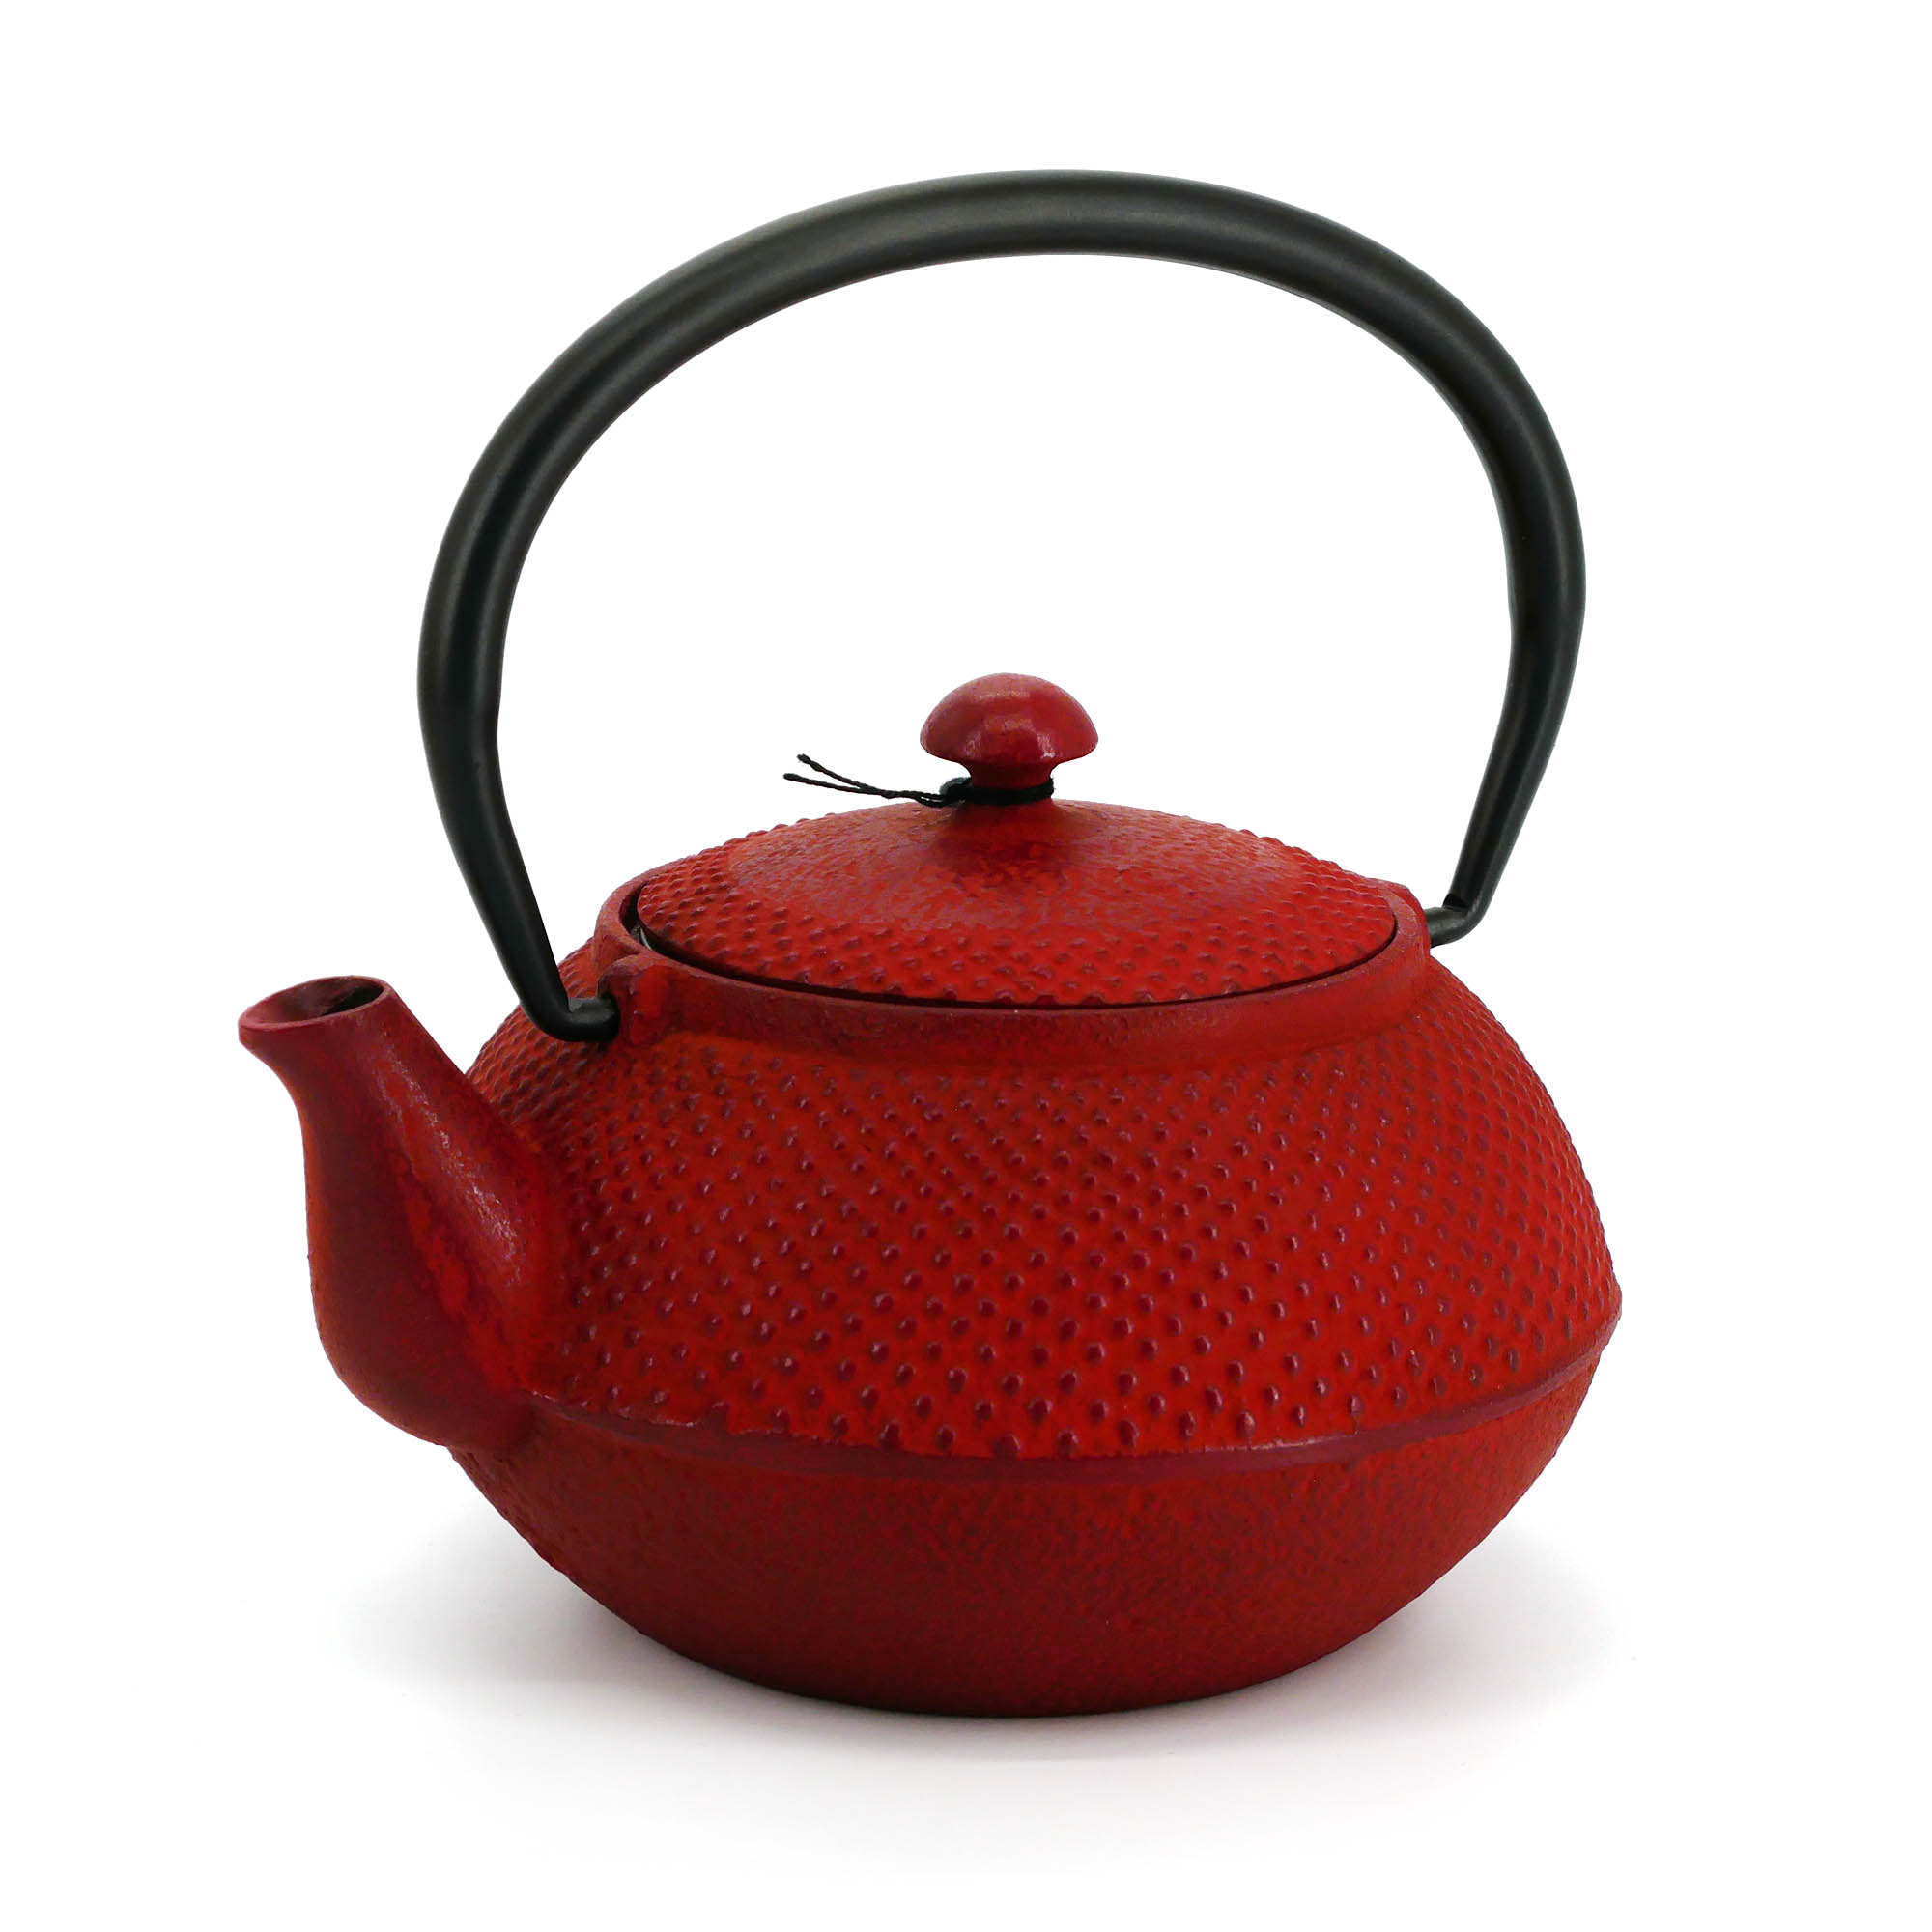 https://japandesign.fr/26743/red-enameled-japanese-cast-iron-teapot-roji-arare-04lt.jpg